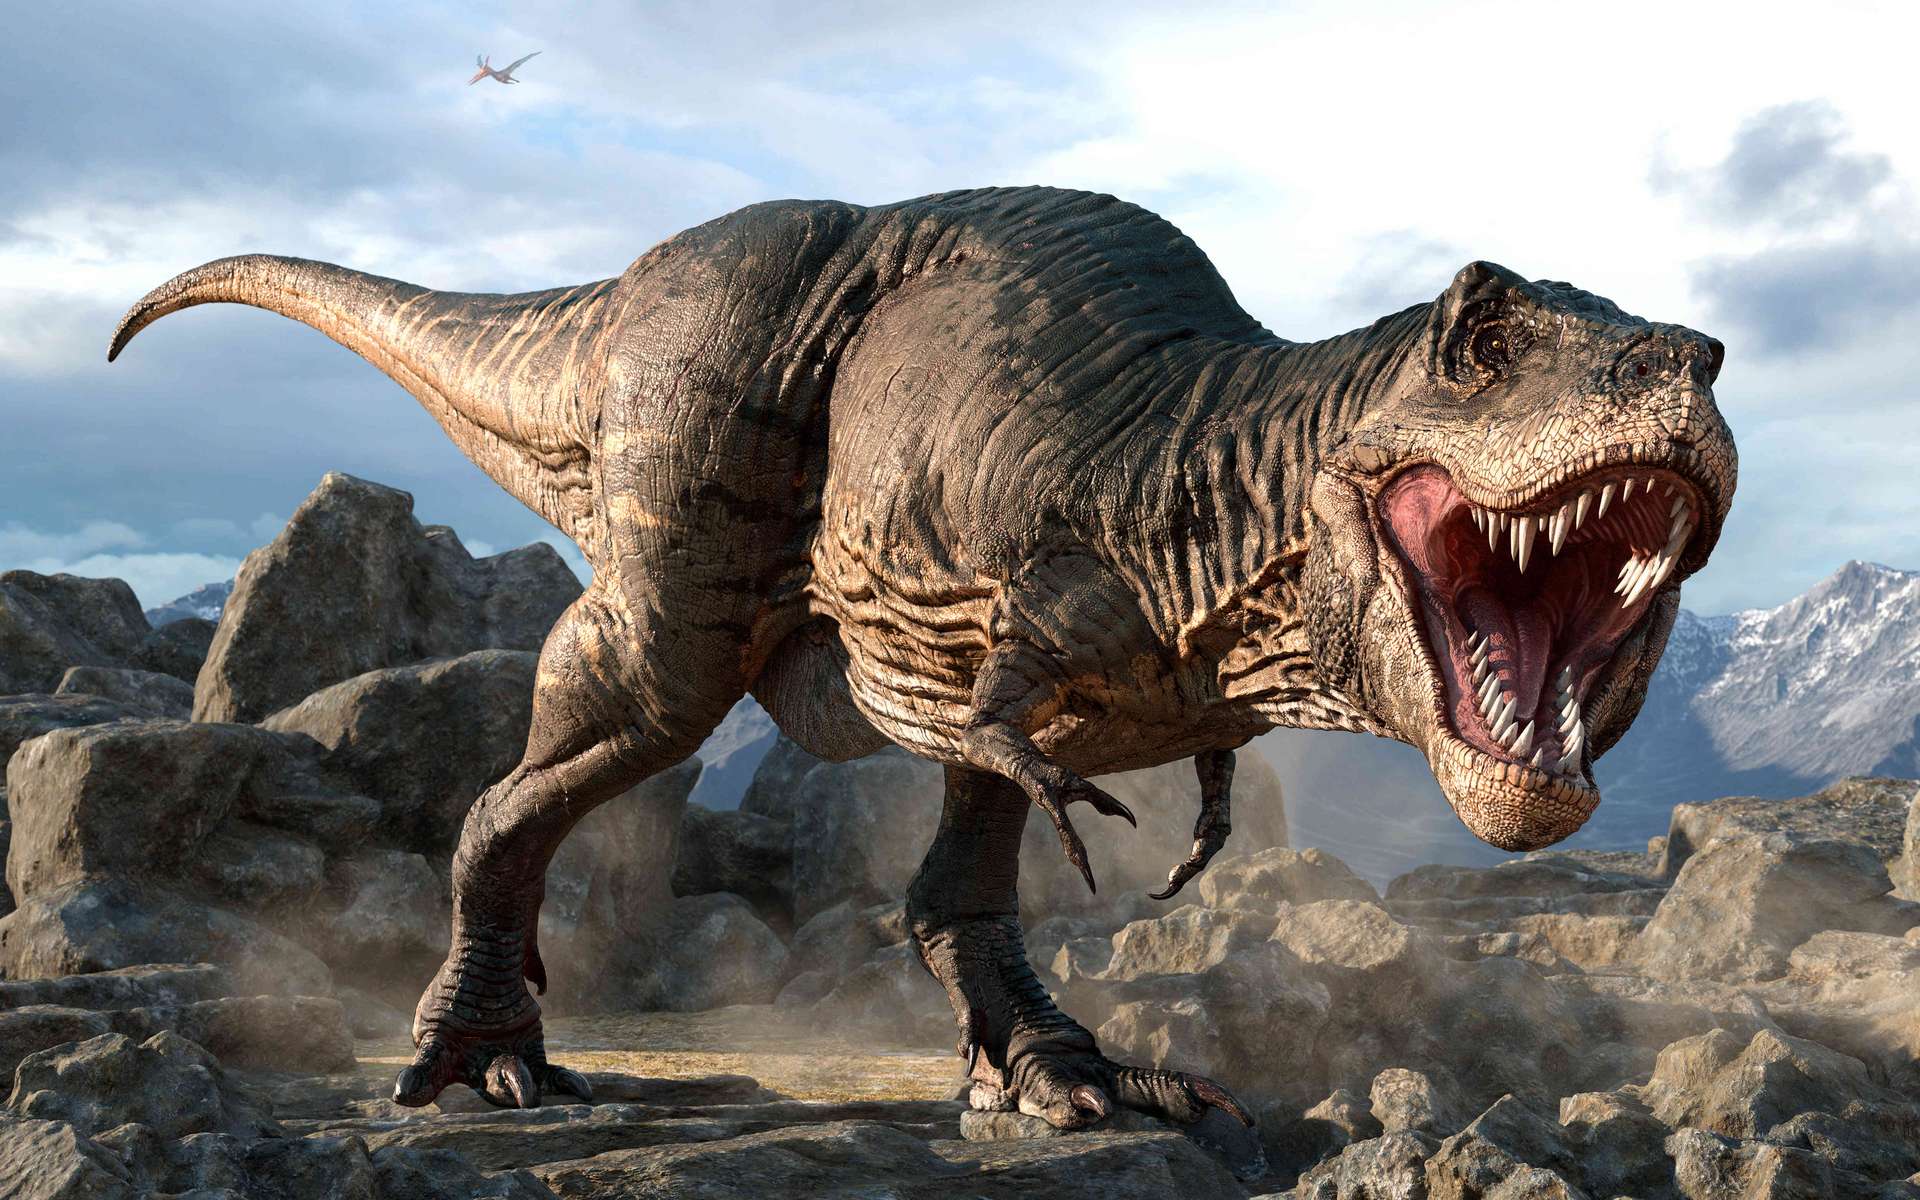 Les dinosaures théropodes tels que ce Tyrannosaurus avaient le sang chaud, une caractéristique qu'ils ont transmise aux oiseaux actuels. © warpaintcobra, Adobe Stock